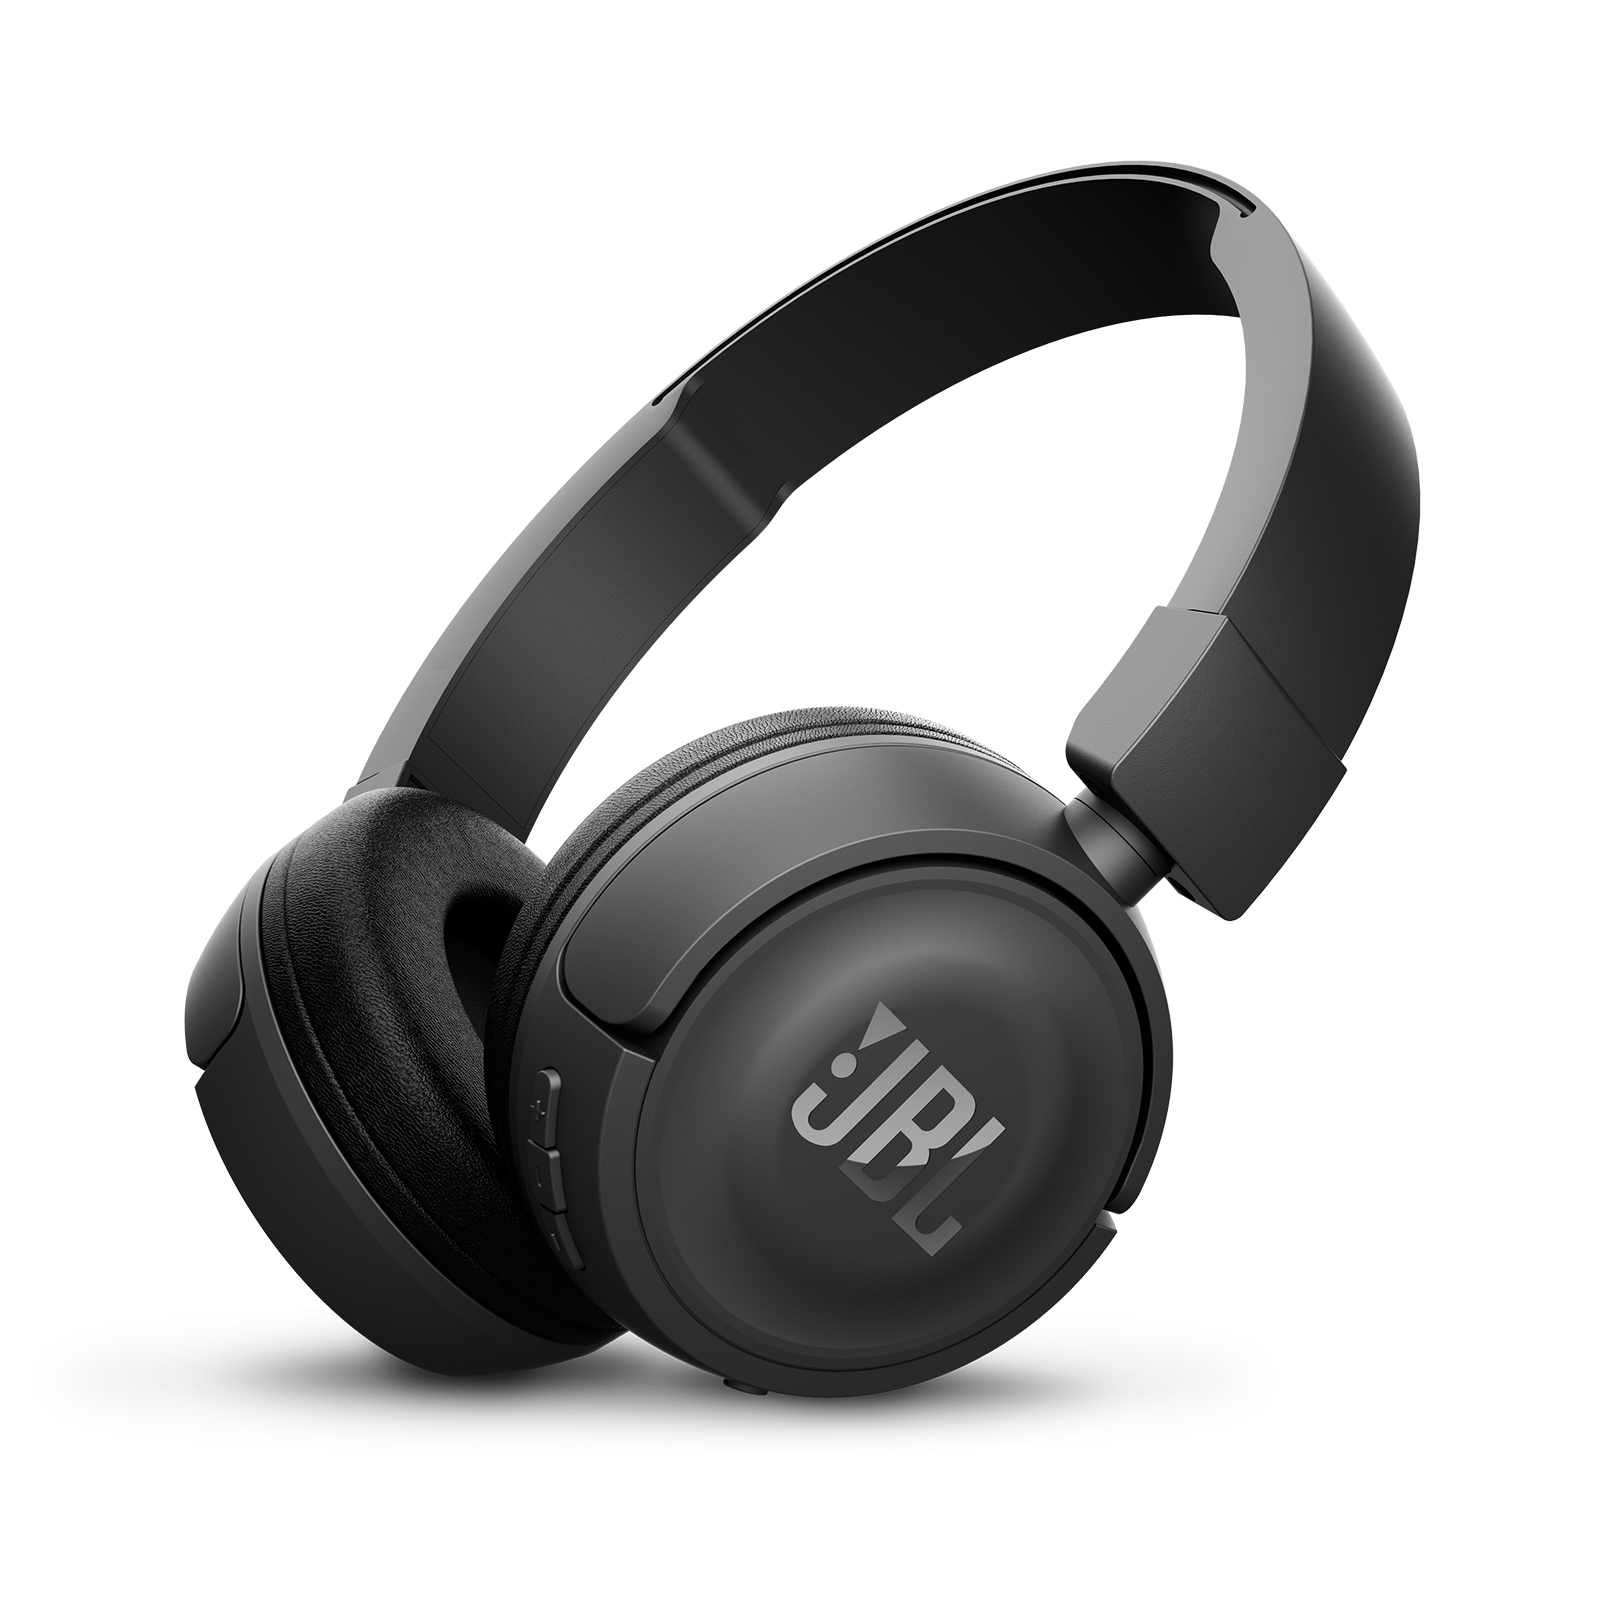 T450BT Wireless | On Ear Headphones